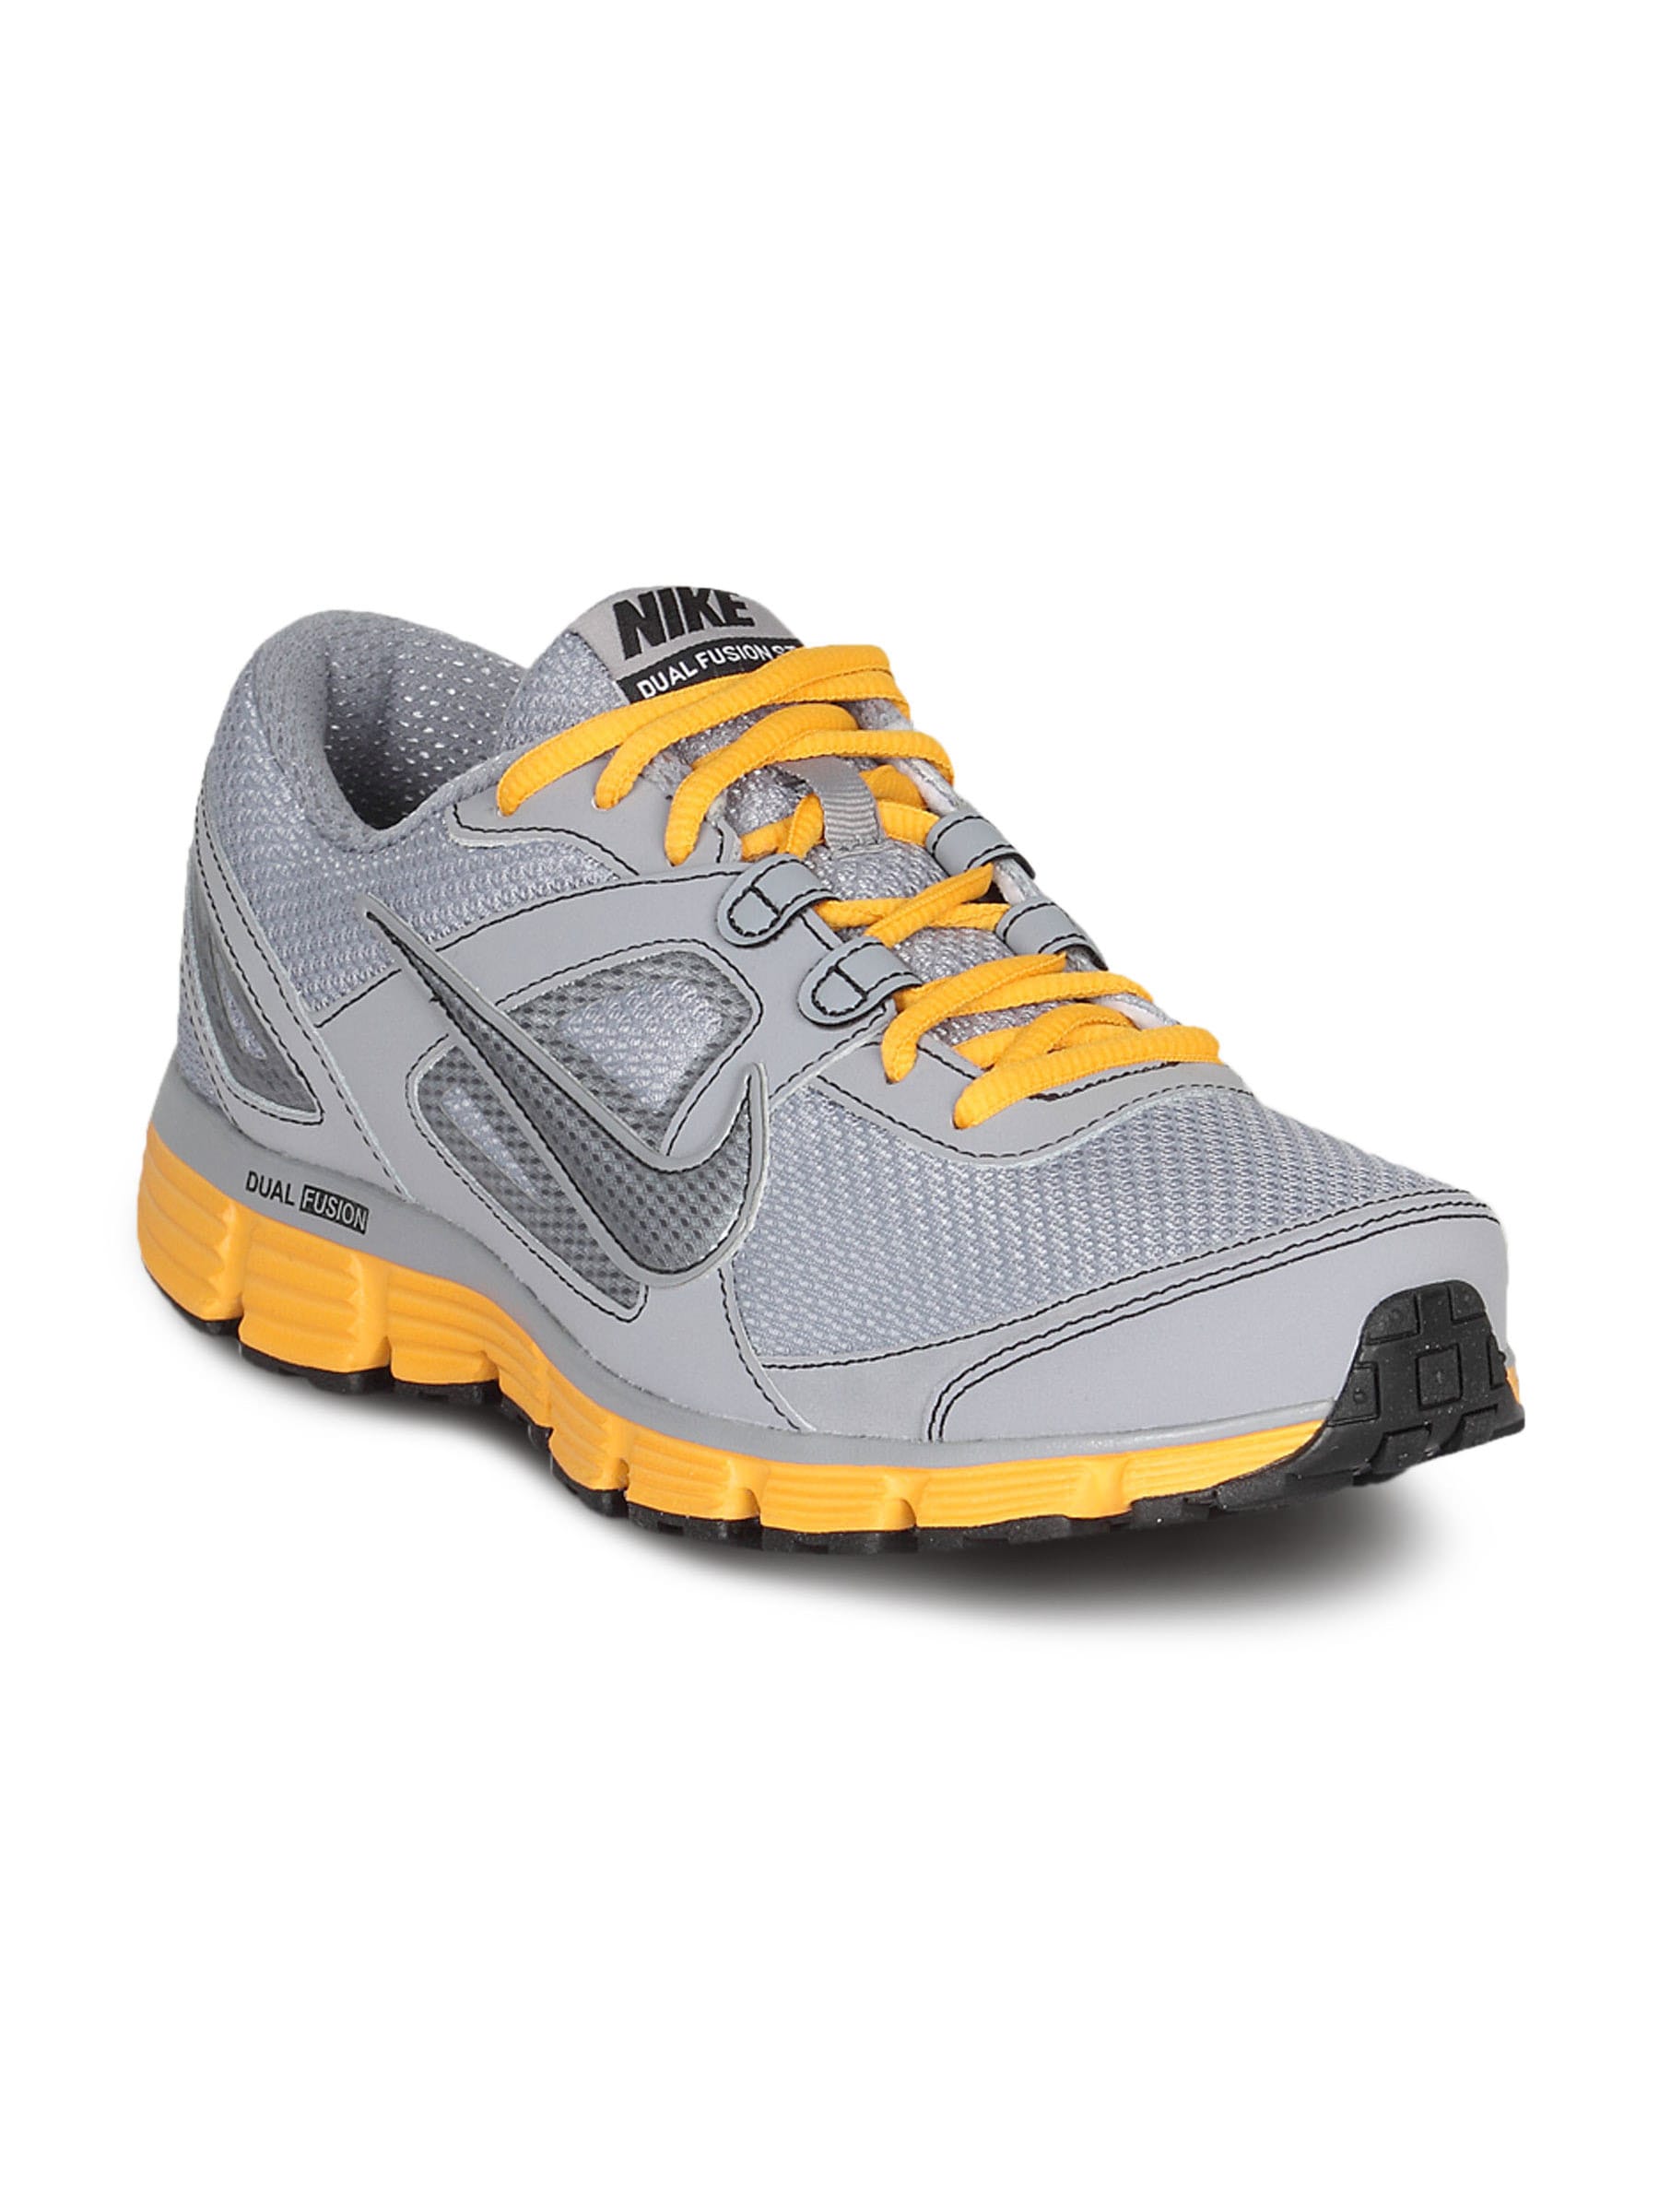 Nike Men's Dual Fusion Grey Shoe